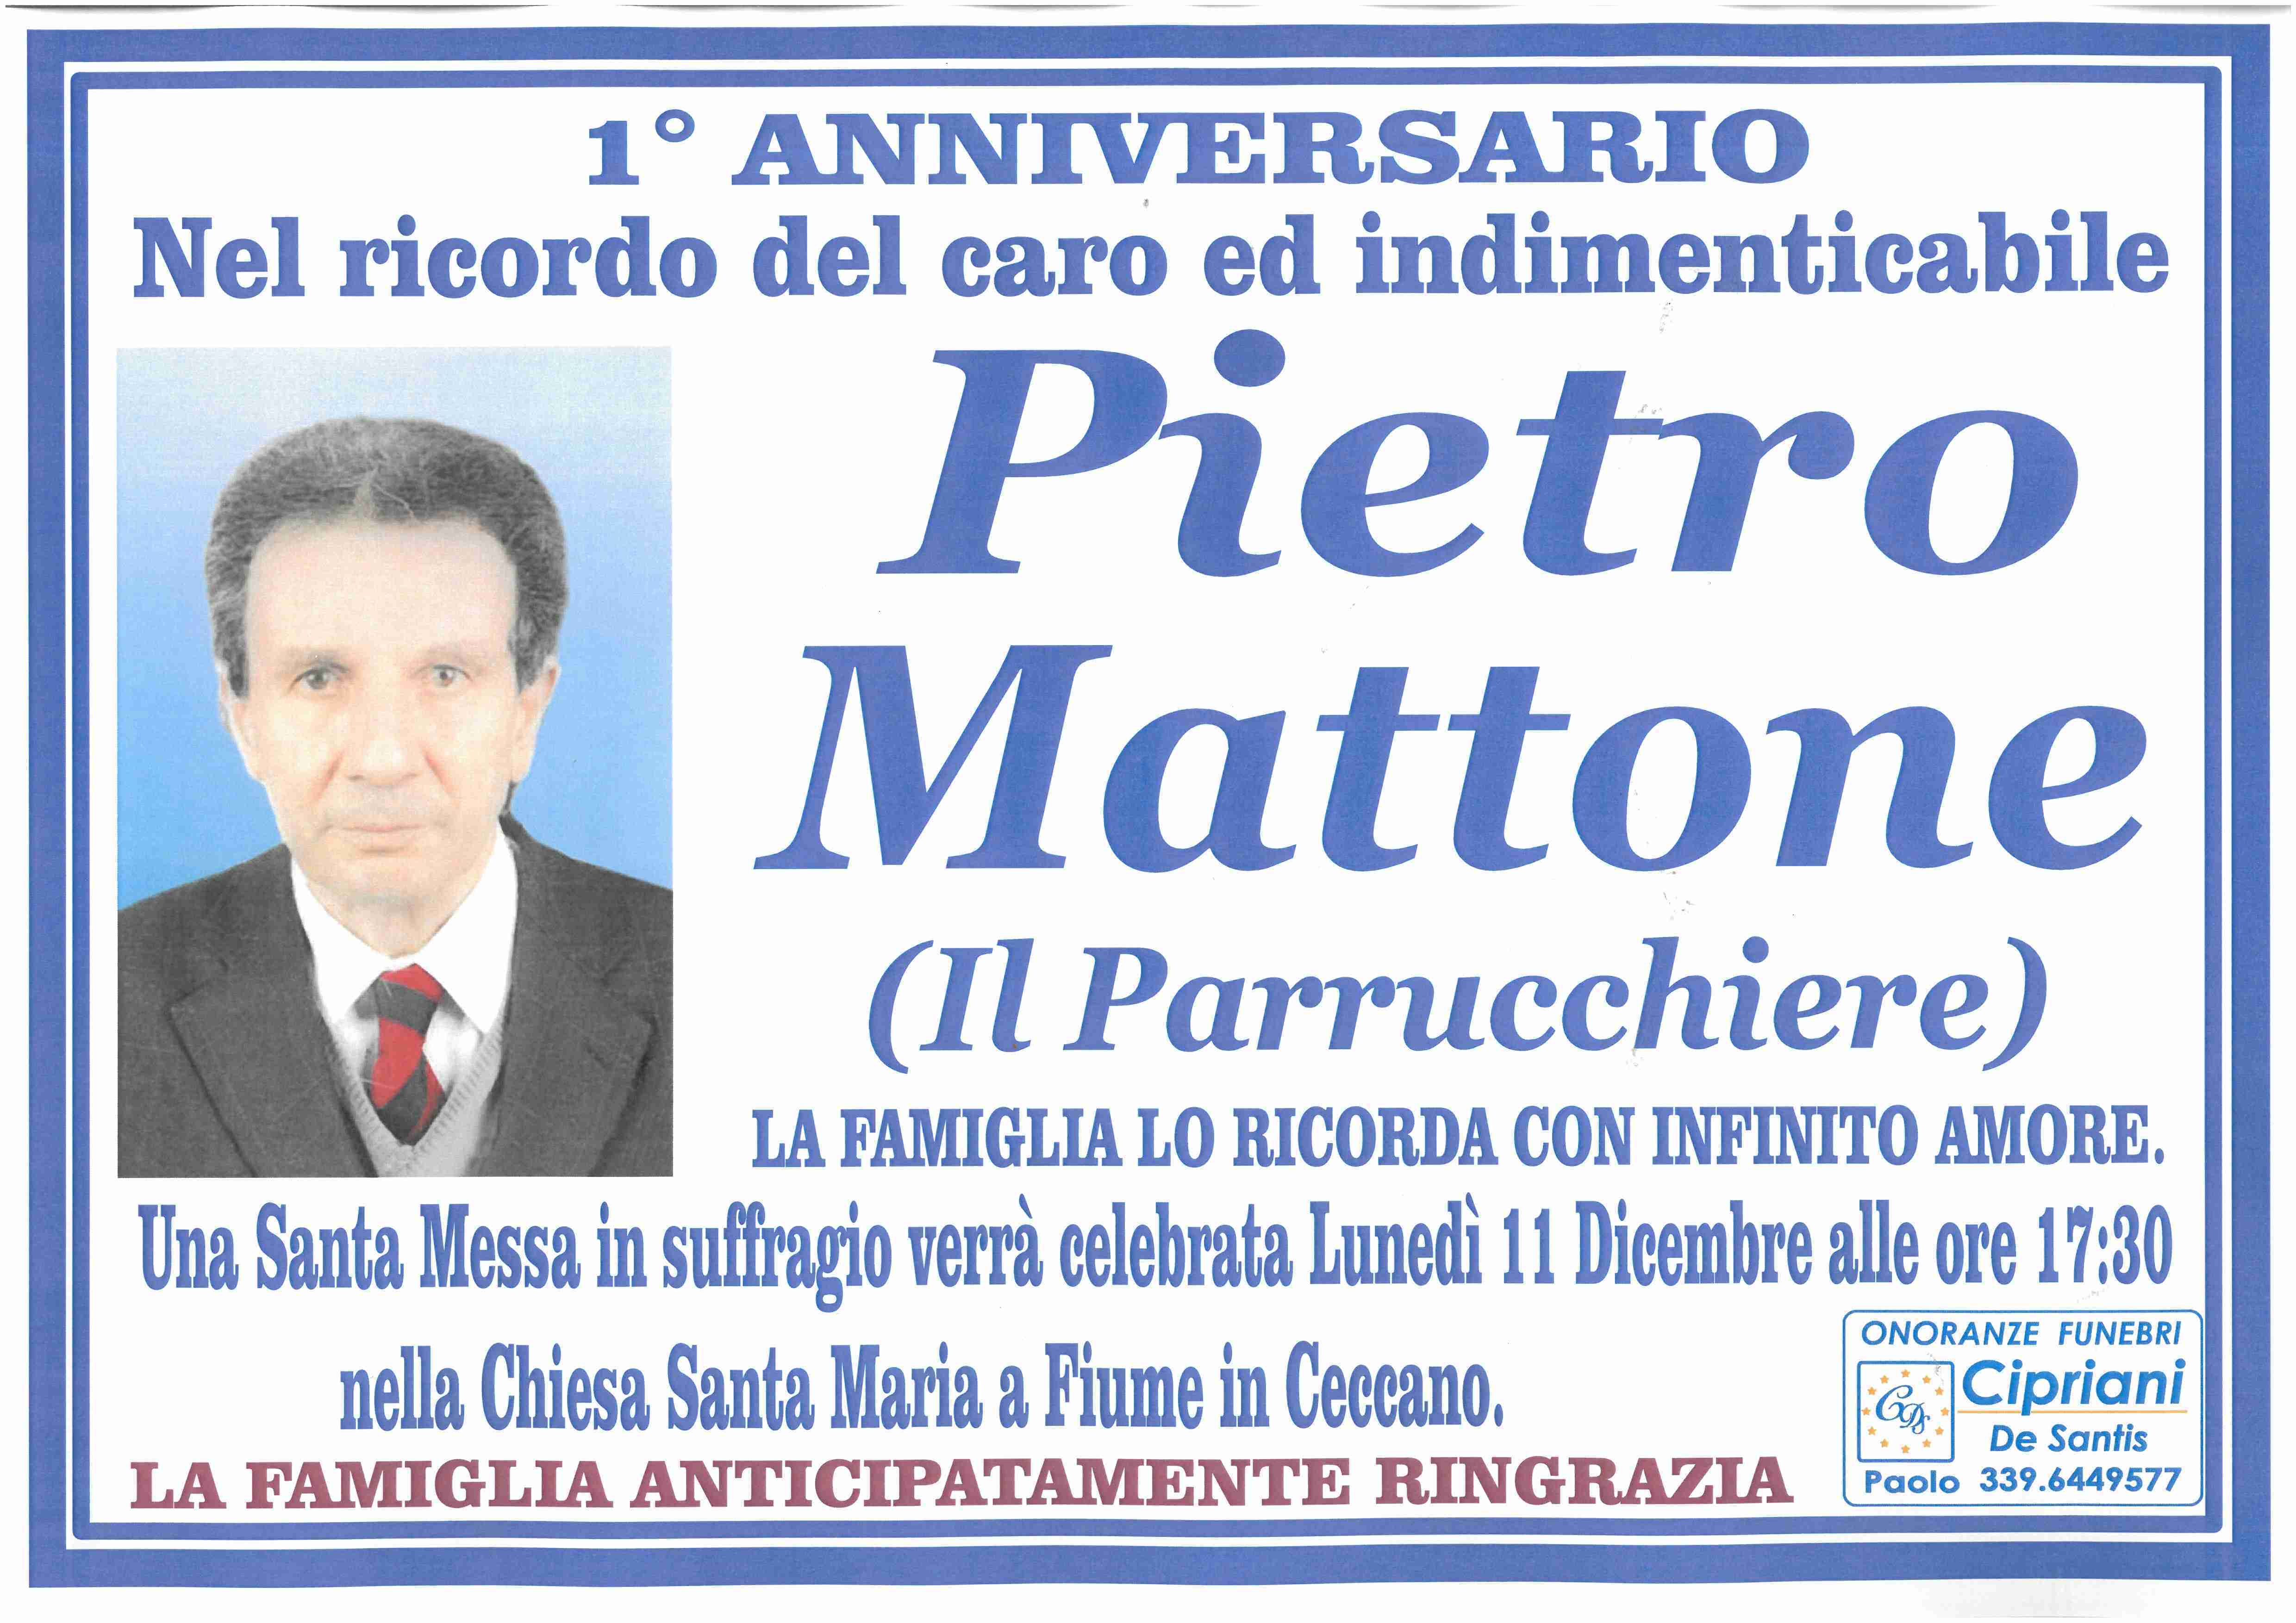 Pietro Mattone